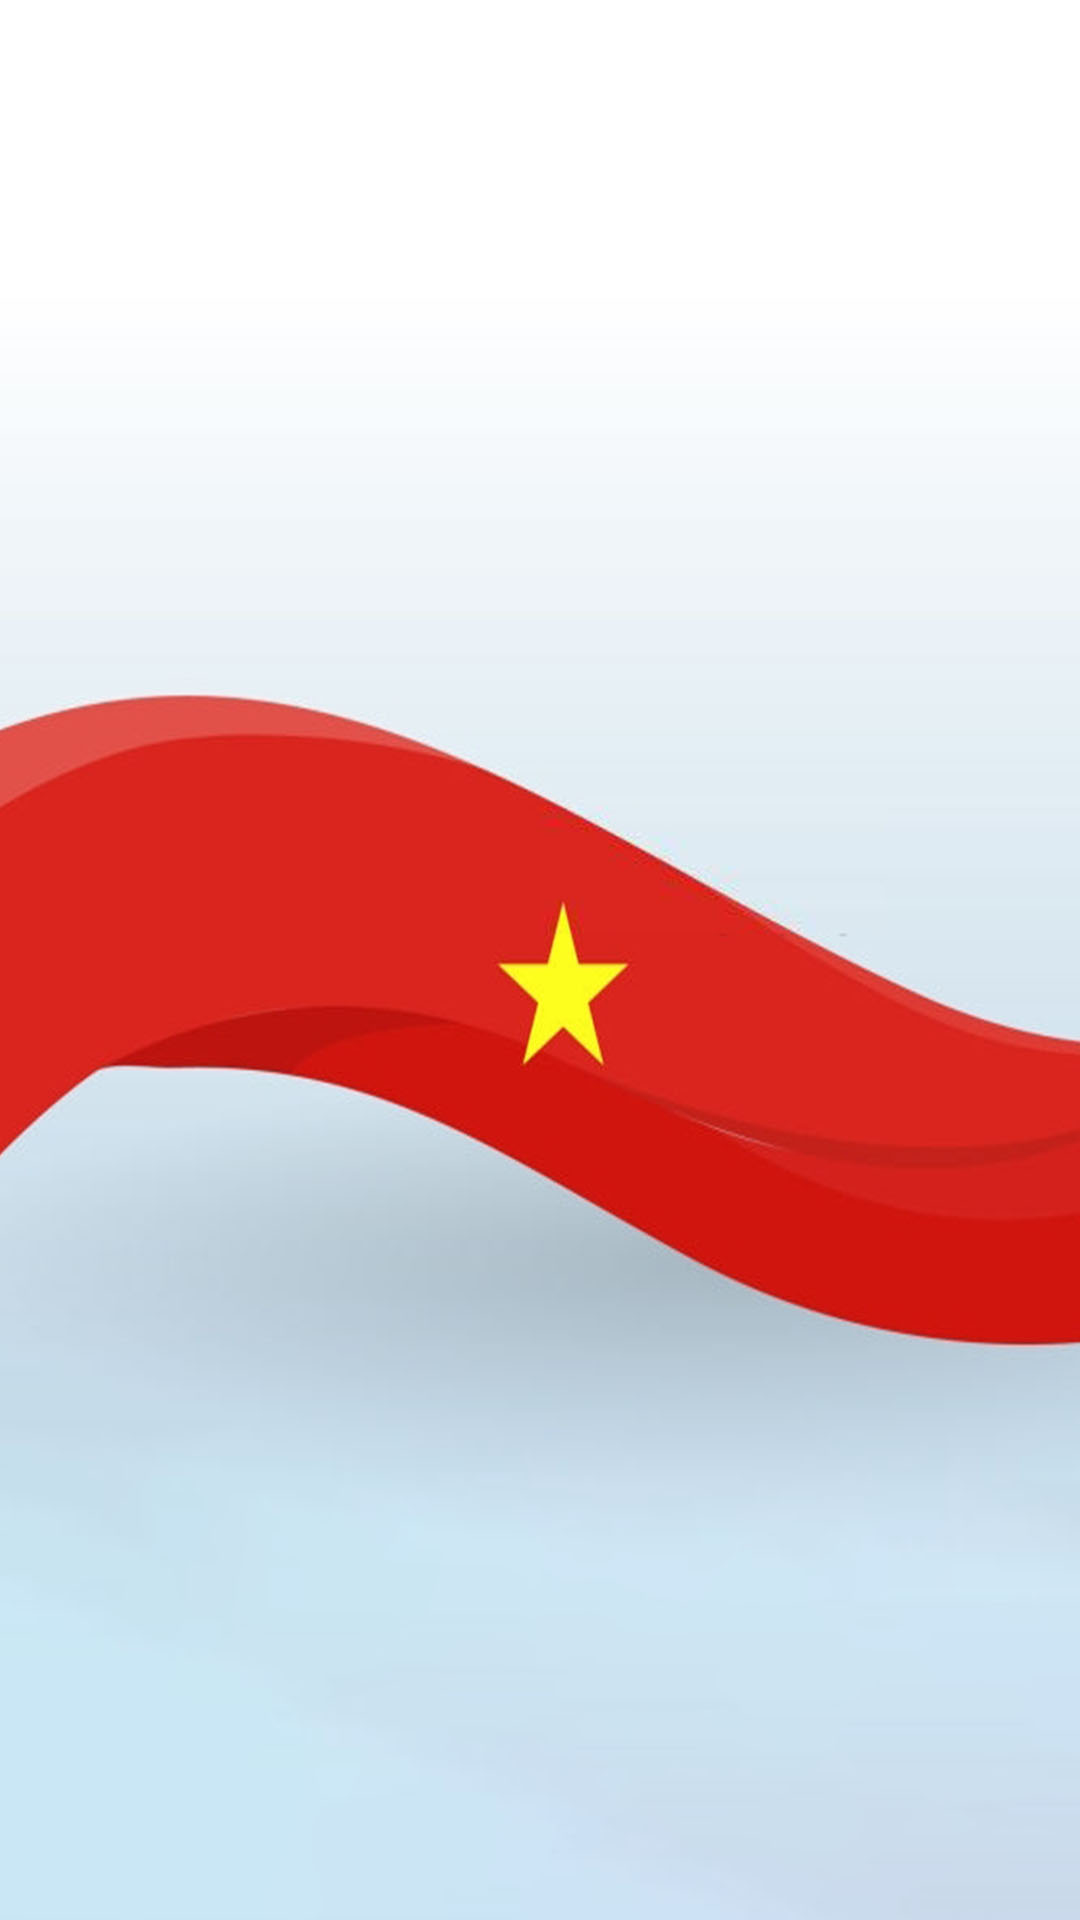 Hình nền lá cờ Việt Nam đẹp cho điện thoại - Ảnh đẹp Free